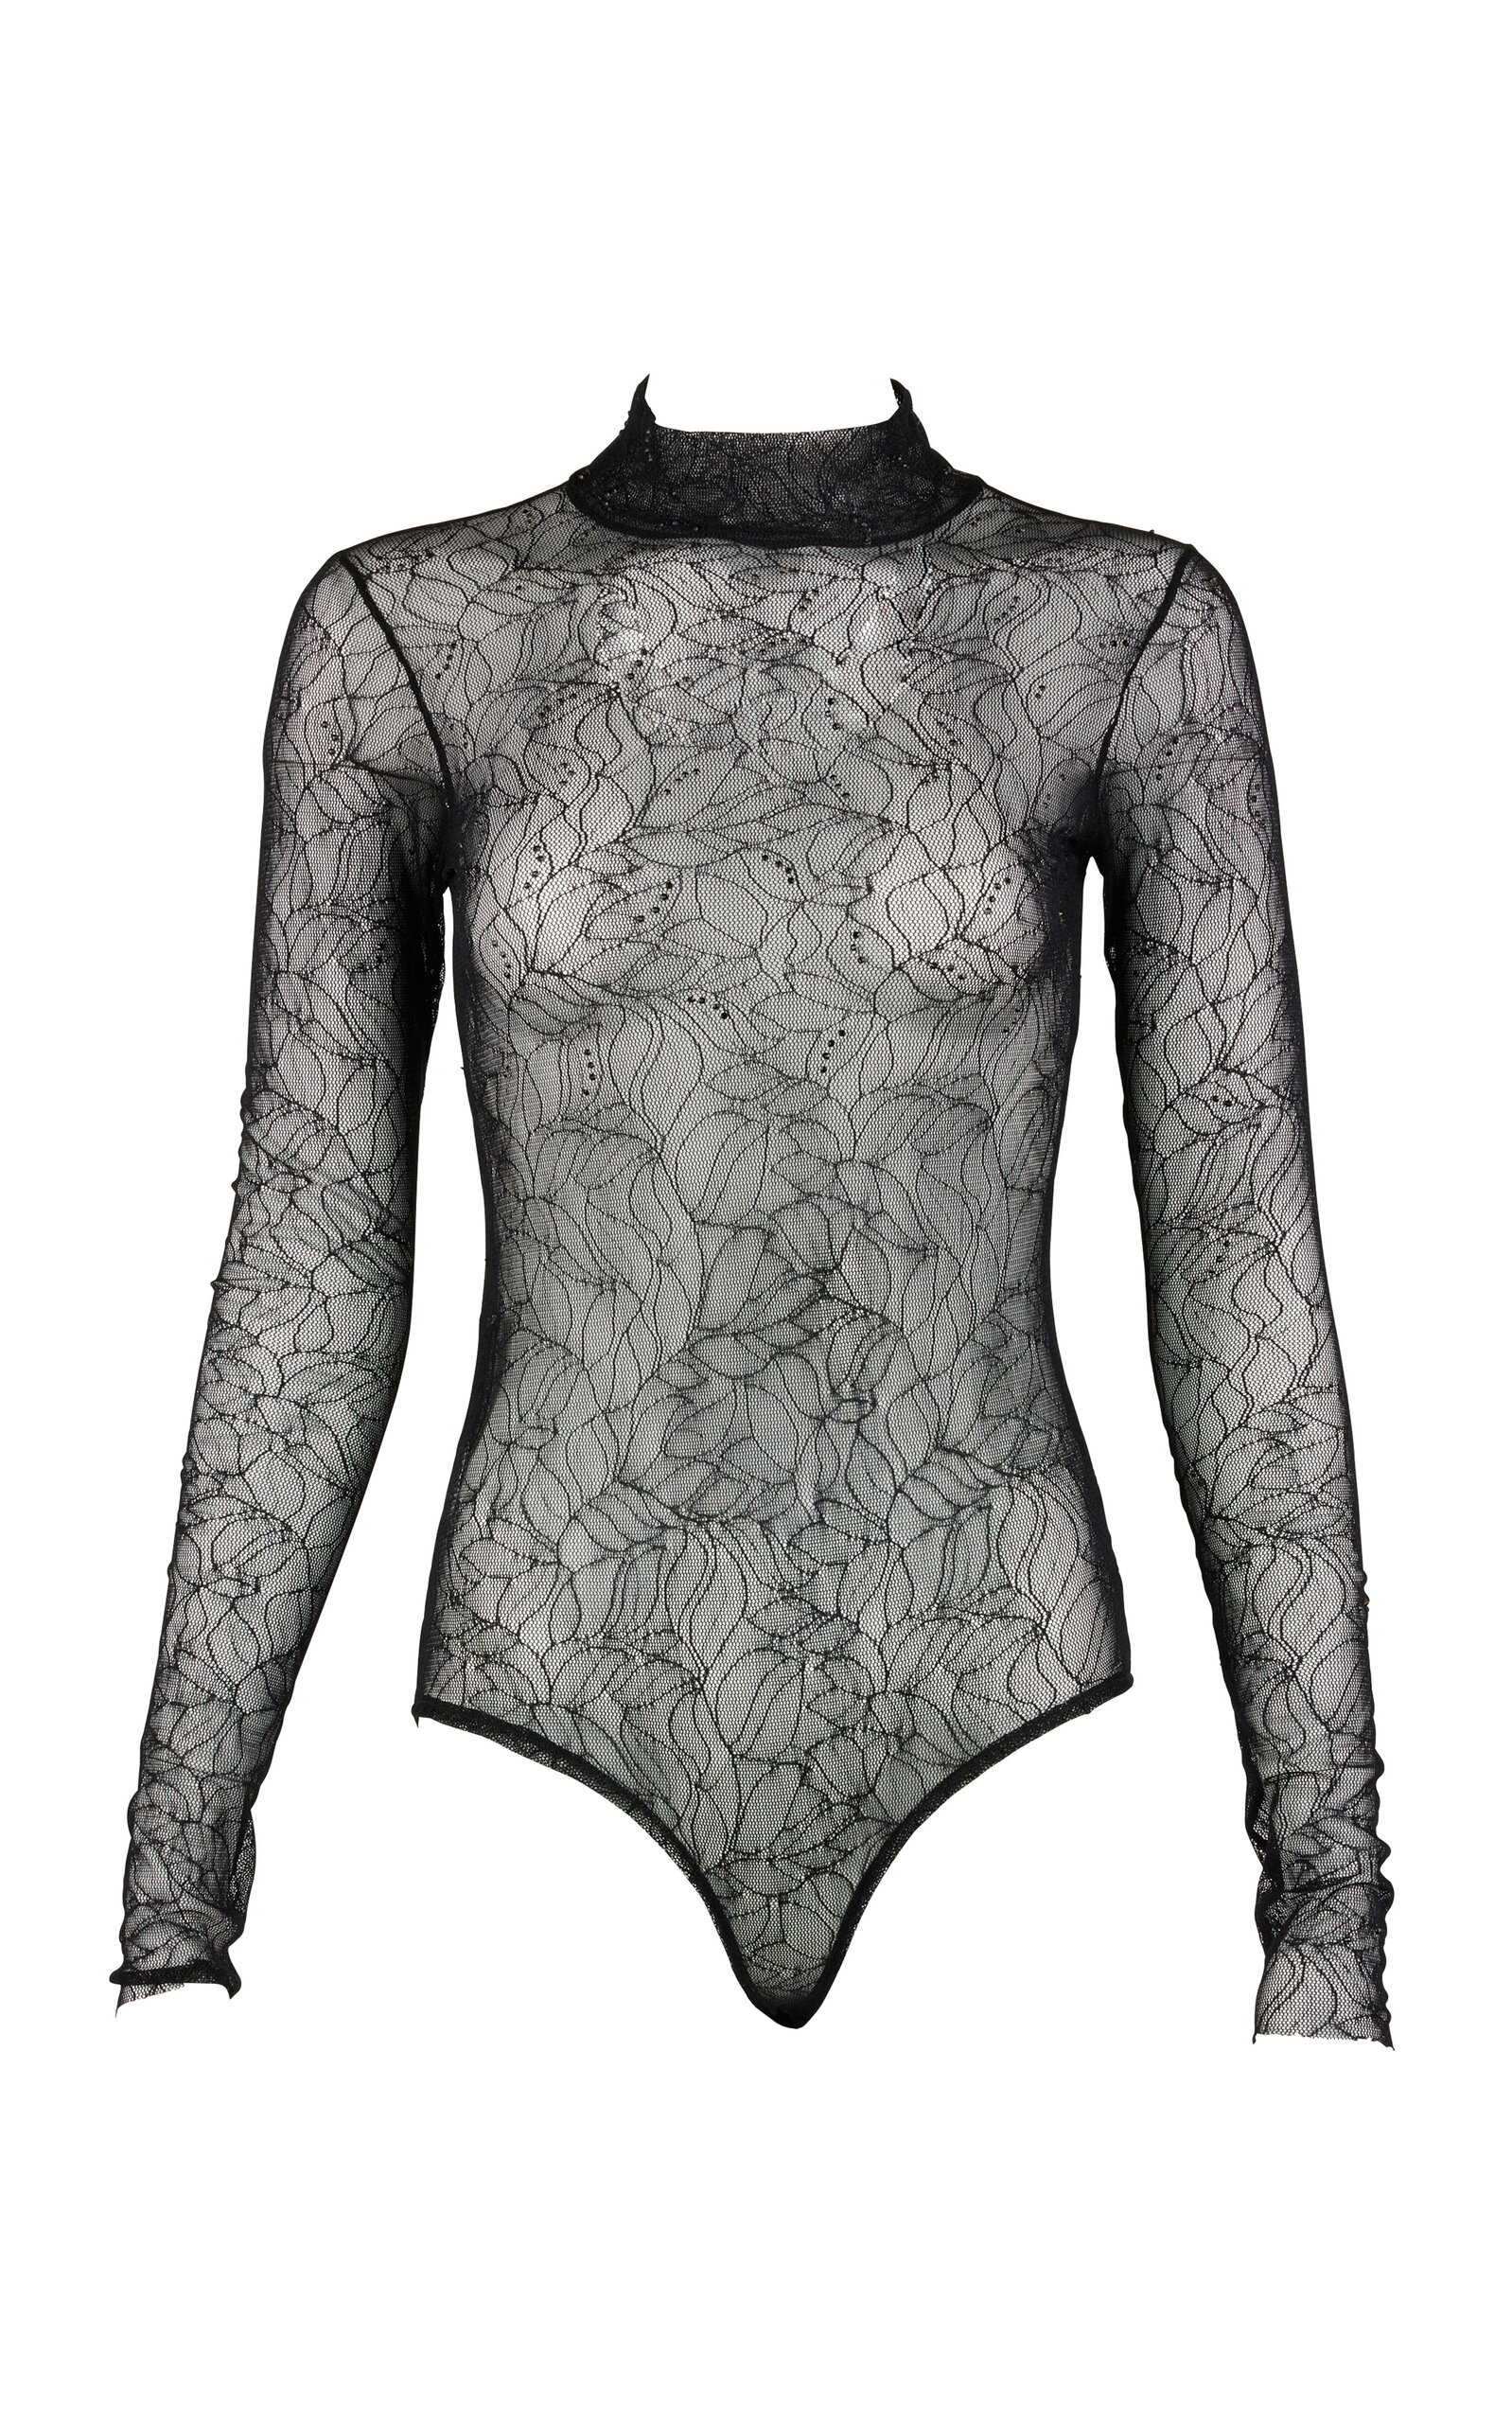 Jave Lace Bodysuit